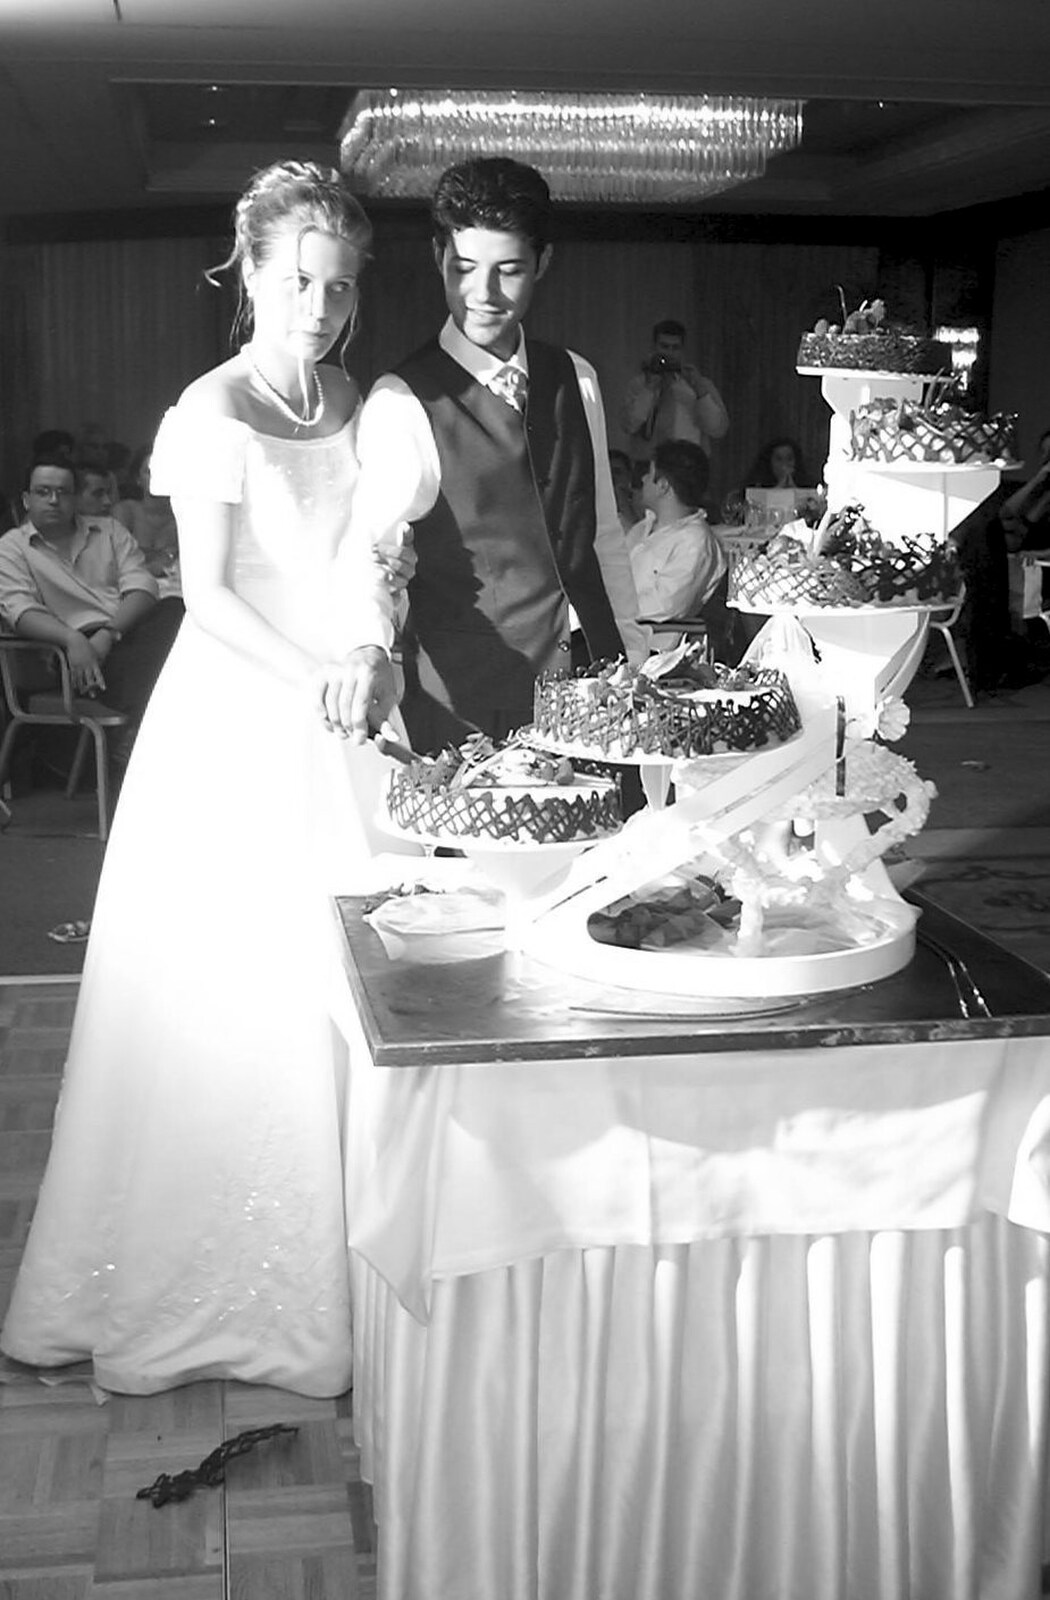 The epic cake is cut from Elisa and Luigi's Wedding, Carouge, Geneva, Switzerland - 20th July 2001